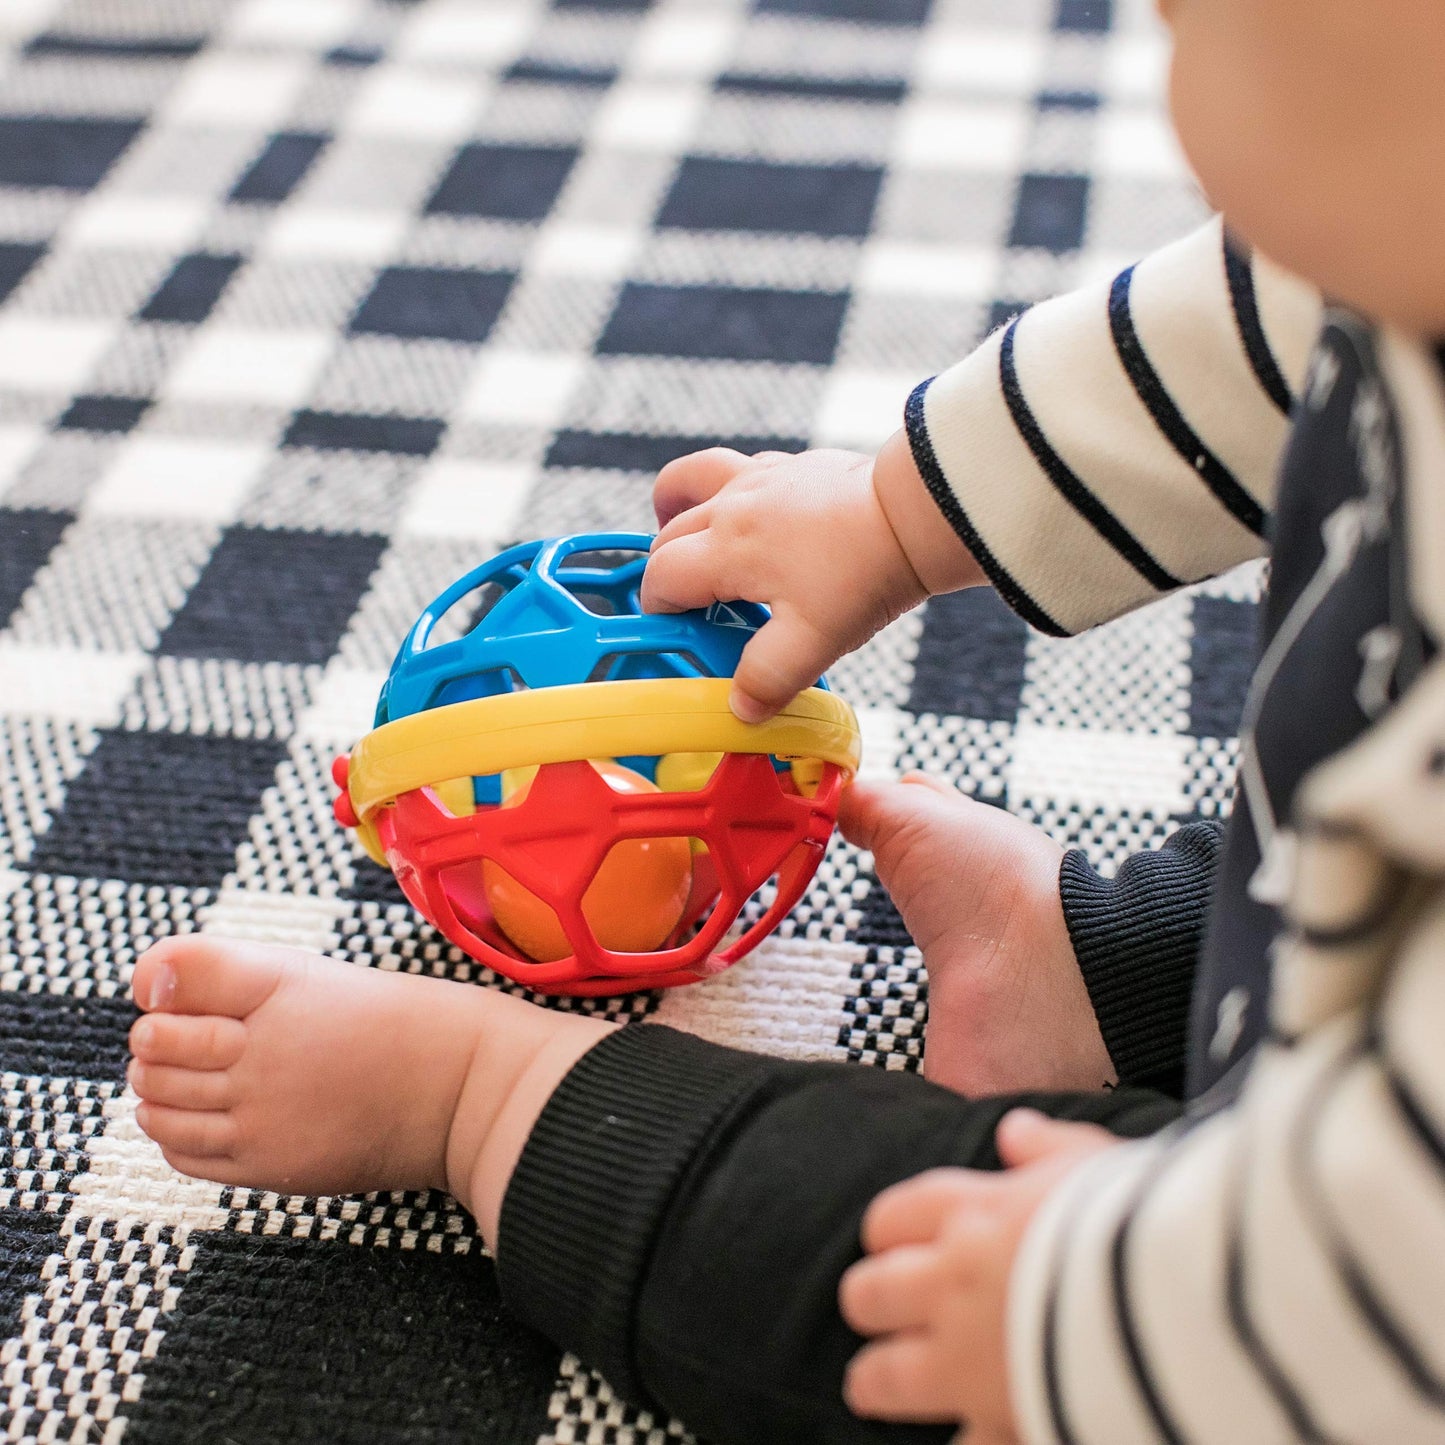 Baby Einstein Baby's First Art Teacher Developmental Toys Kit and Gift Set, Newborn and up